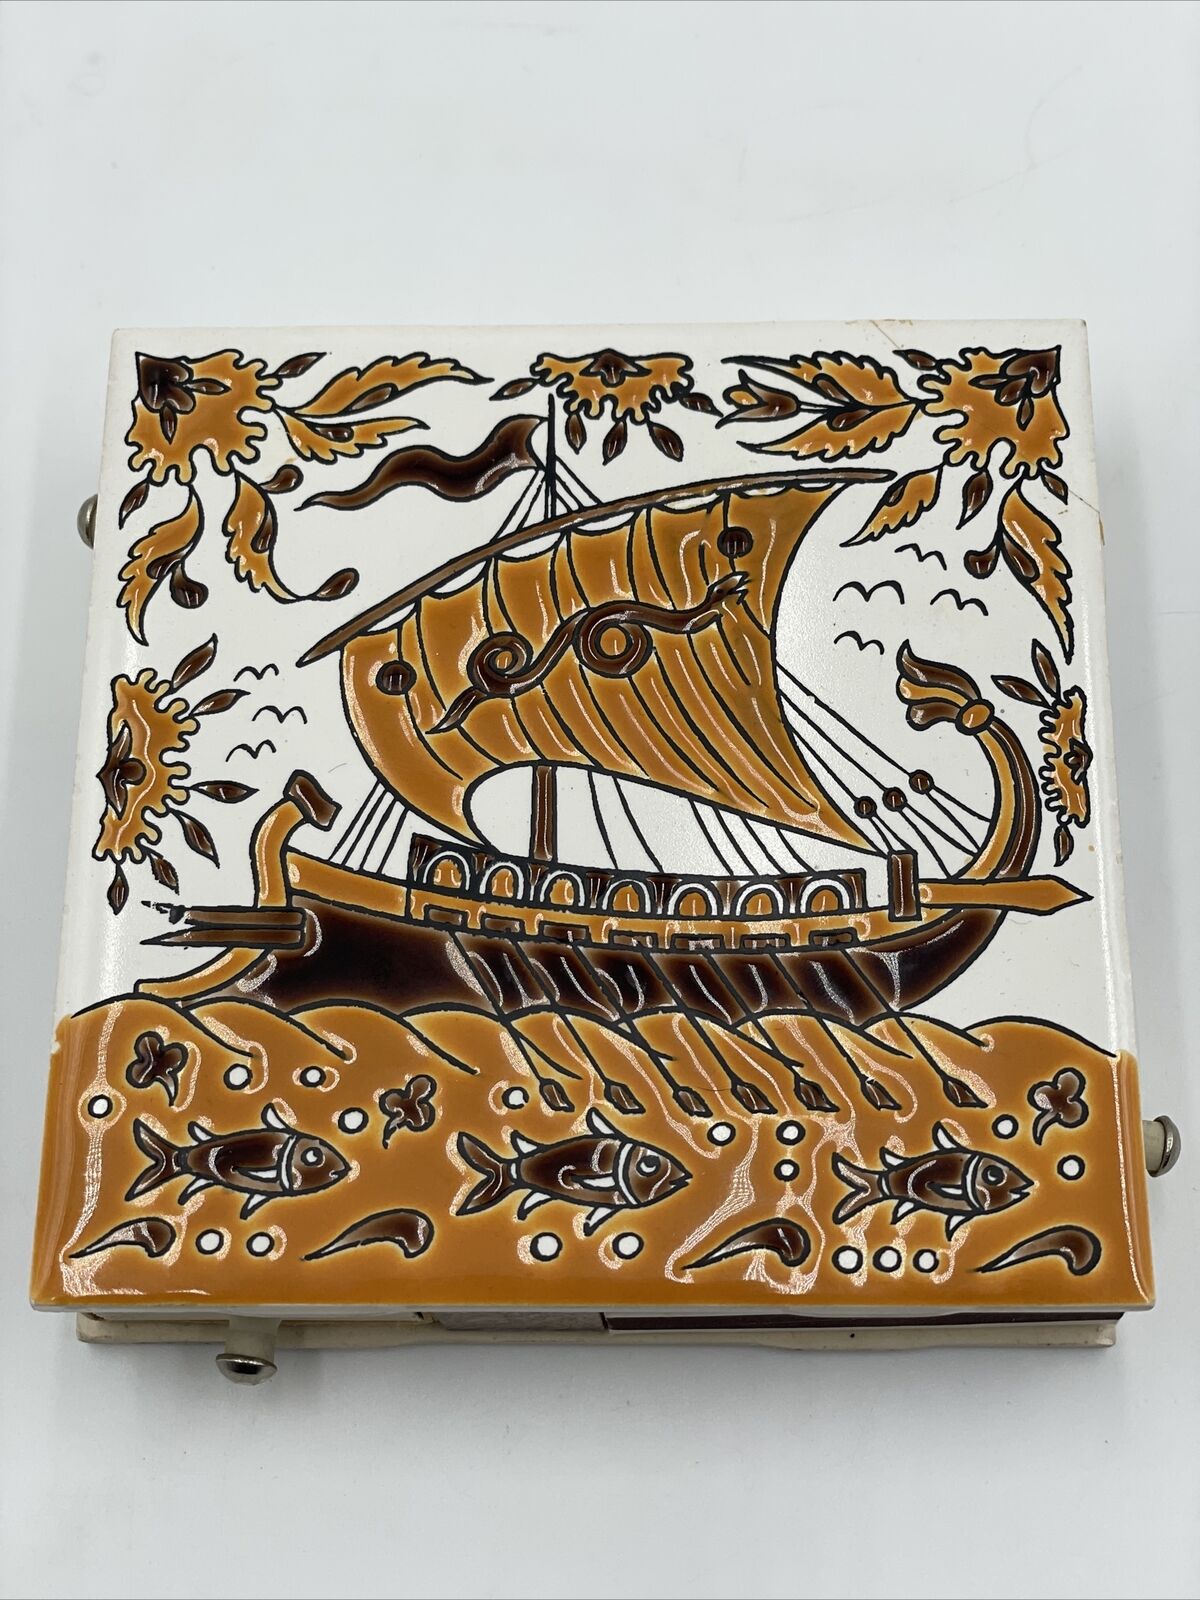 Vintage Neofitoy Keramik Decorative Tile Matchbox Hand Made Greece Viking Boat